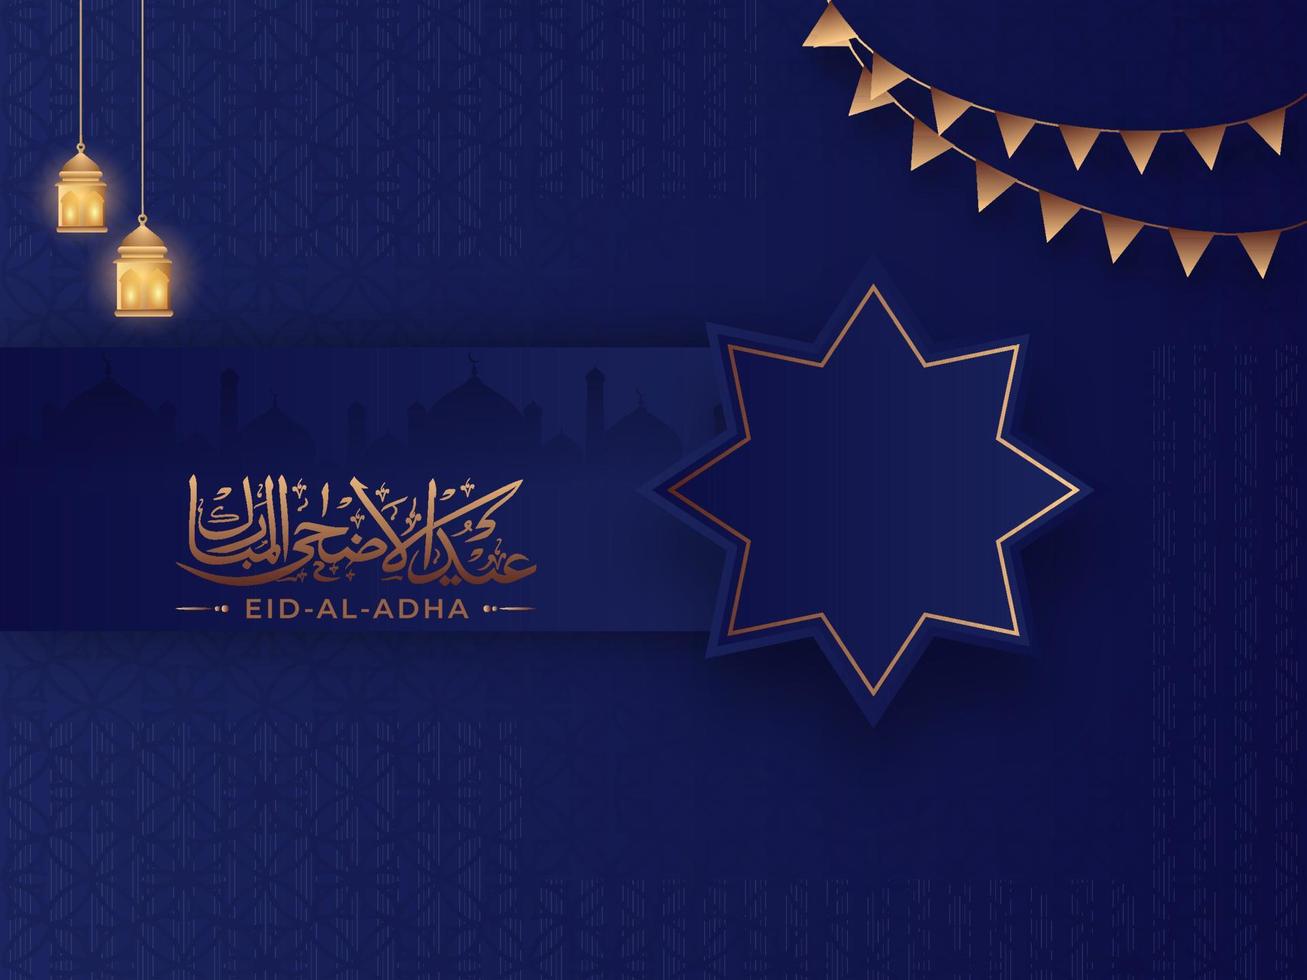 brons arabicum kalligrafi av eid-al-adha med gnugga el hizb symbol, hängande upplyst lyktor och flaggväv flaggor på blå islamic mönster bakgrund. vektor